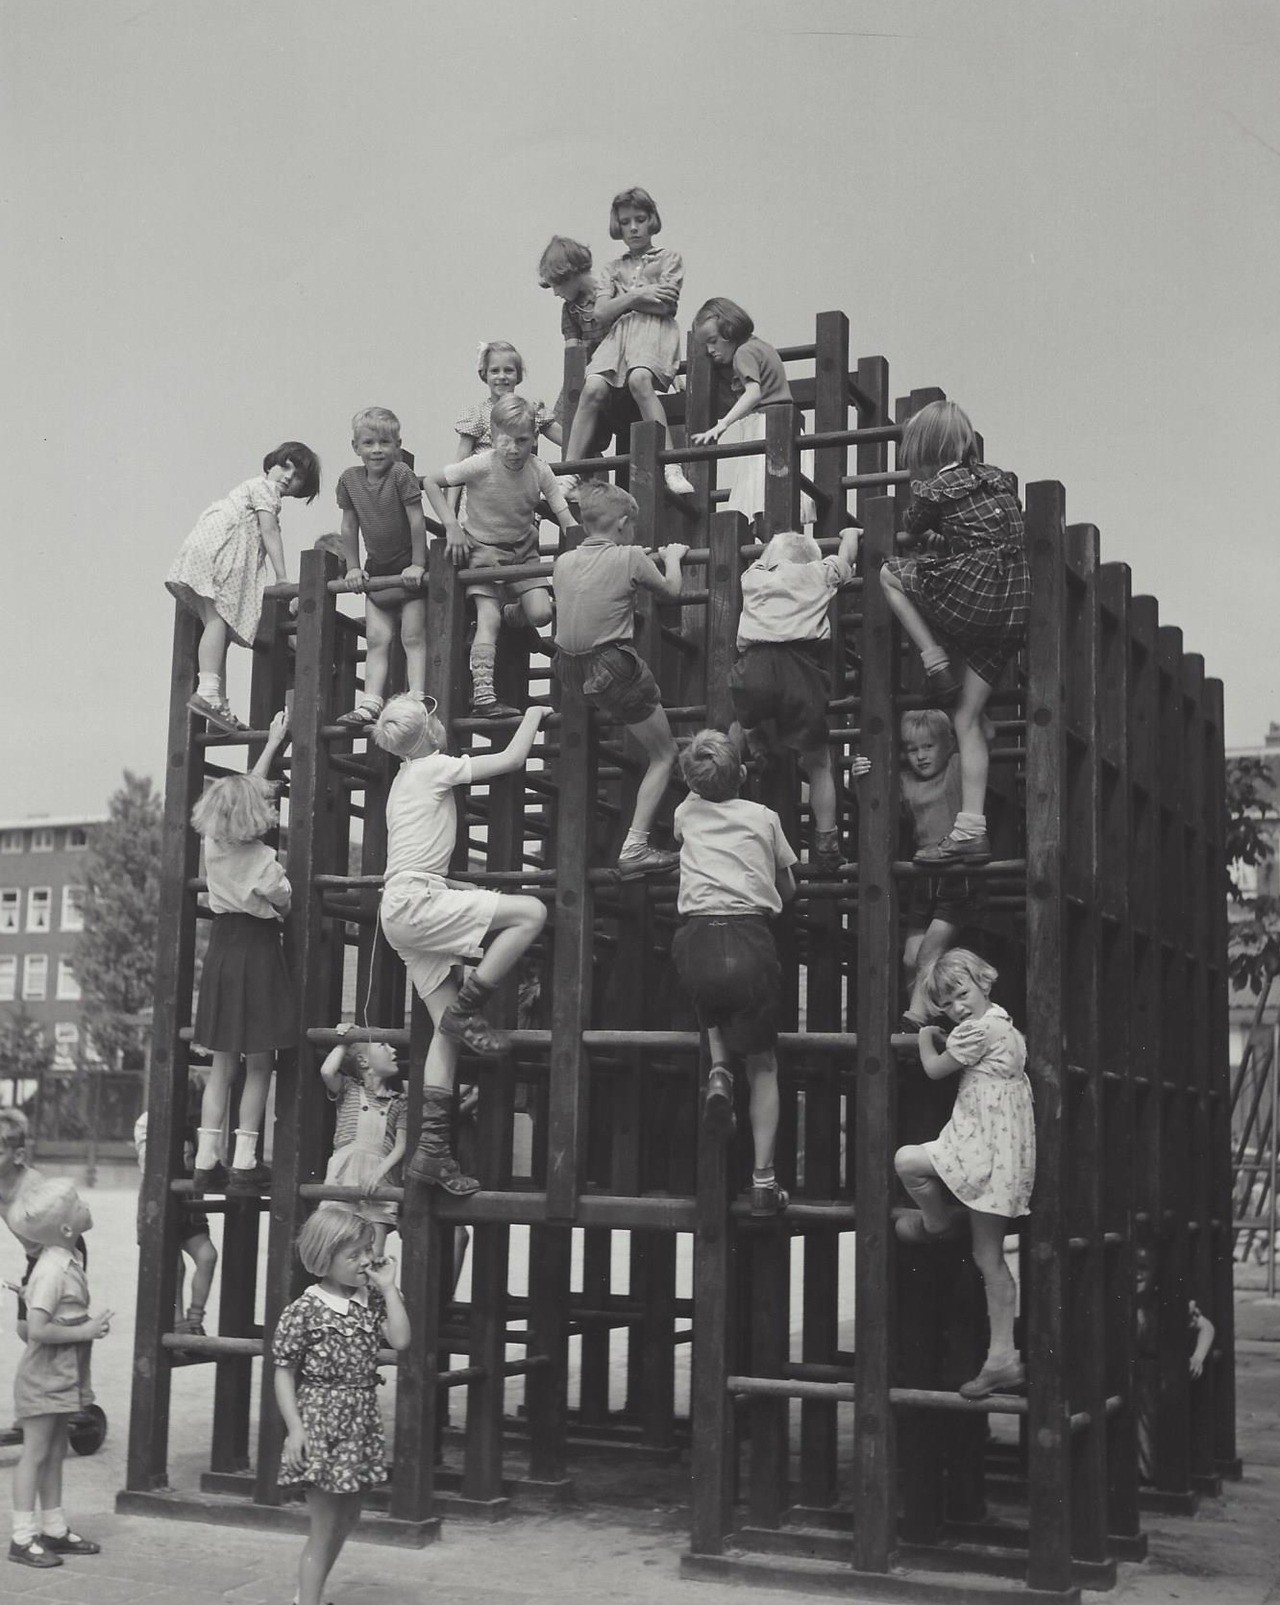 Игровая площадка, Амстердам, 1960-е. Фотограф Кис Шерер